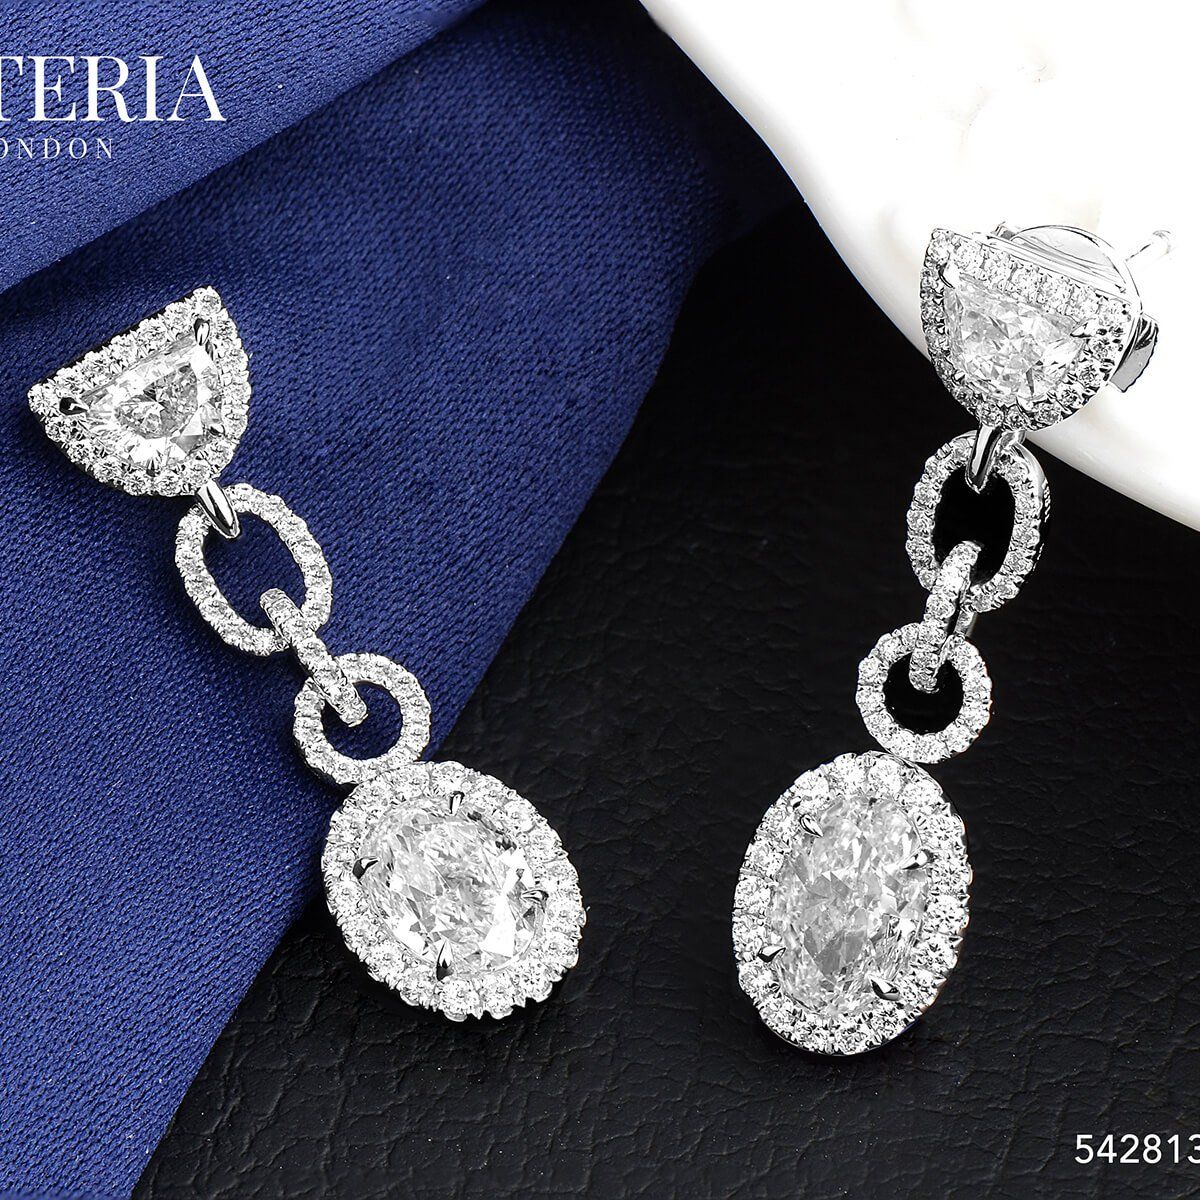  White Diamond Earrings, 2.02 Ct. (3.33 Ct. TW), Oval shape, GIA Certified, JCEW05428138